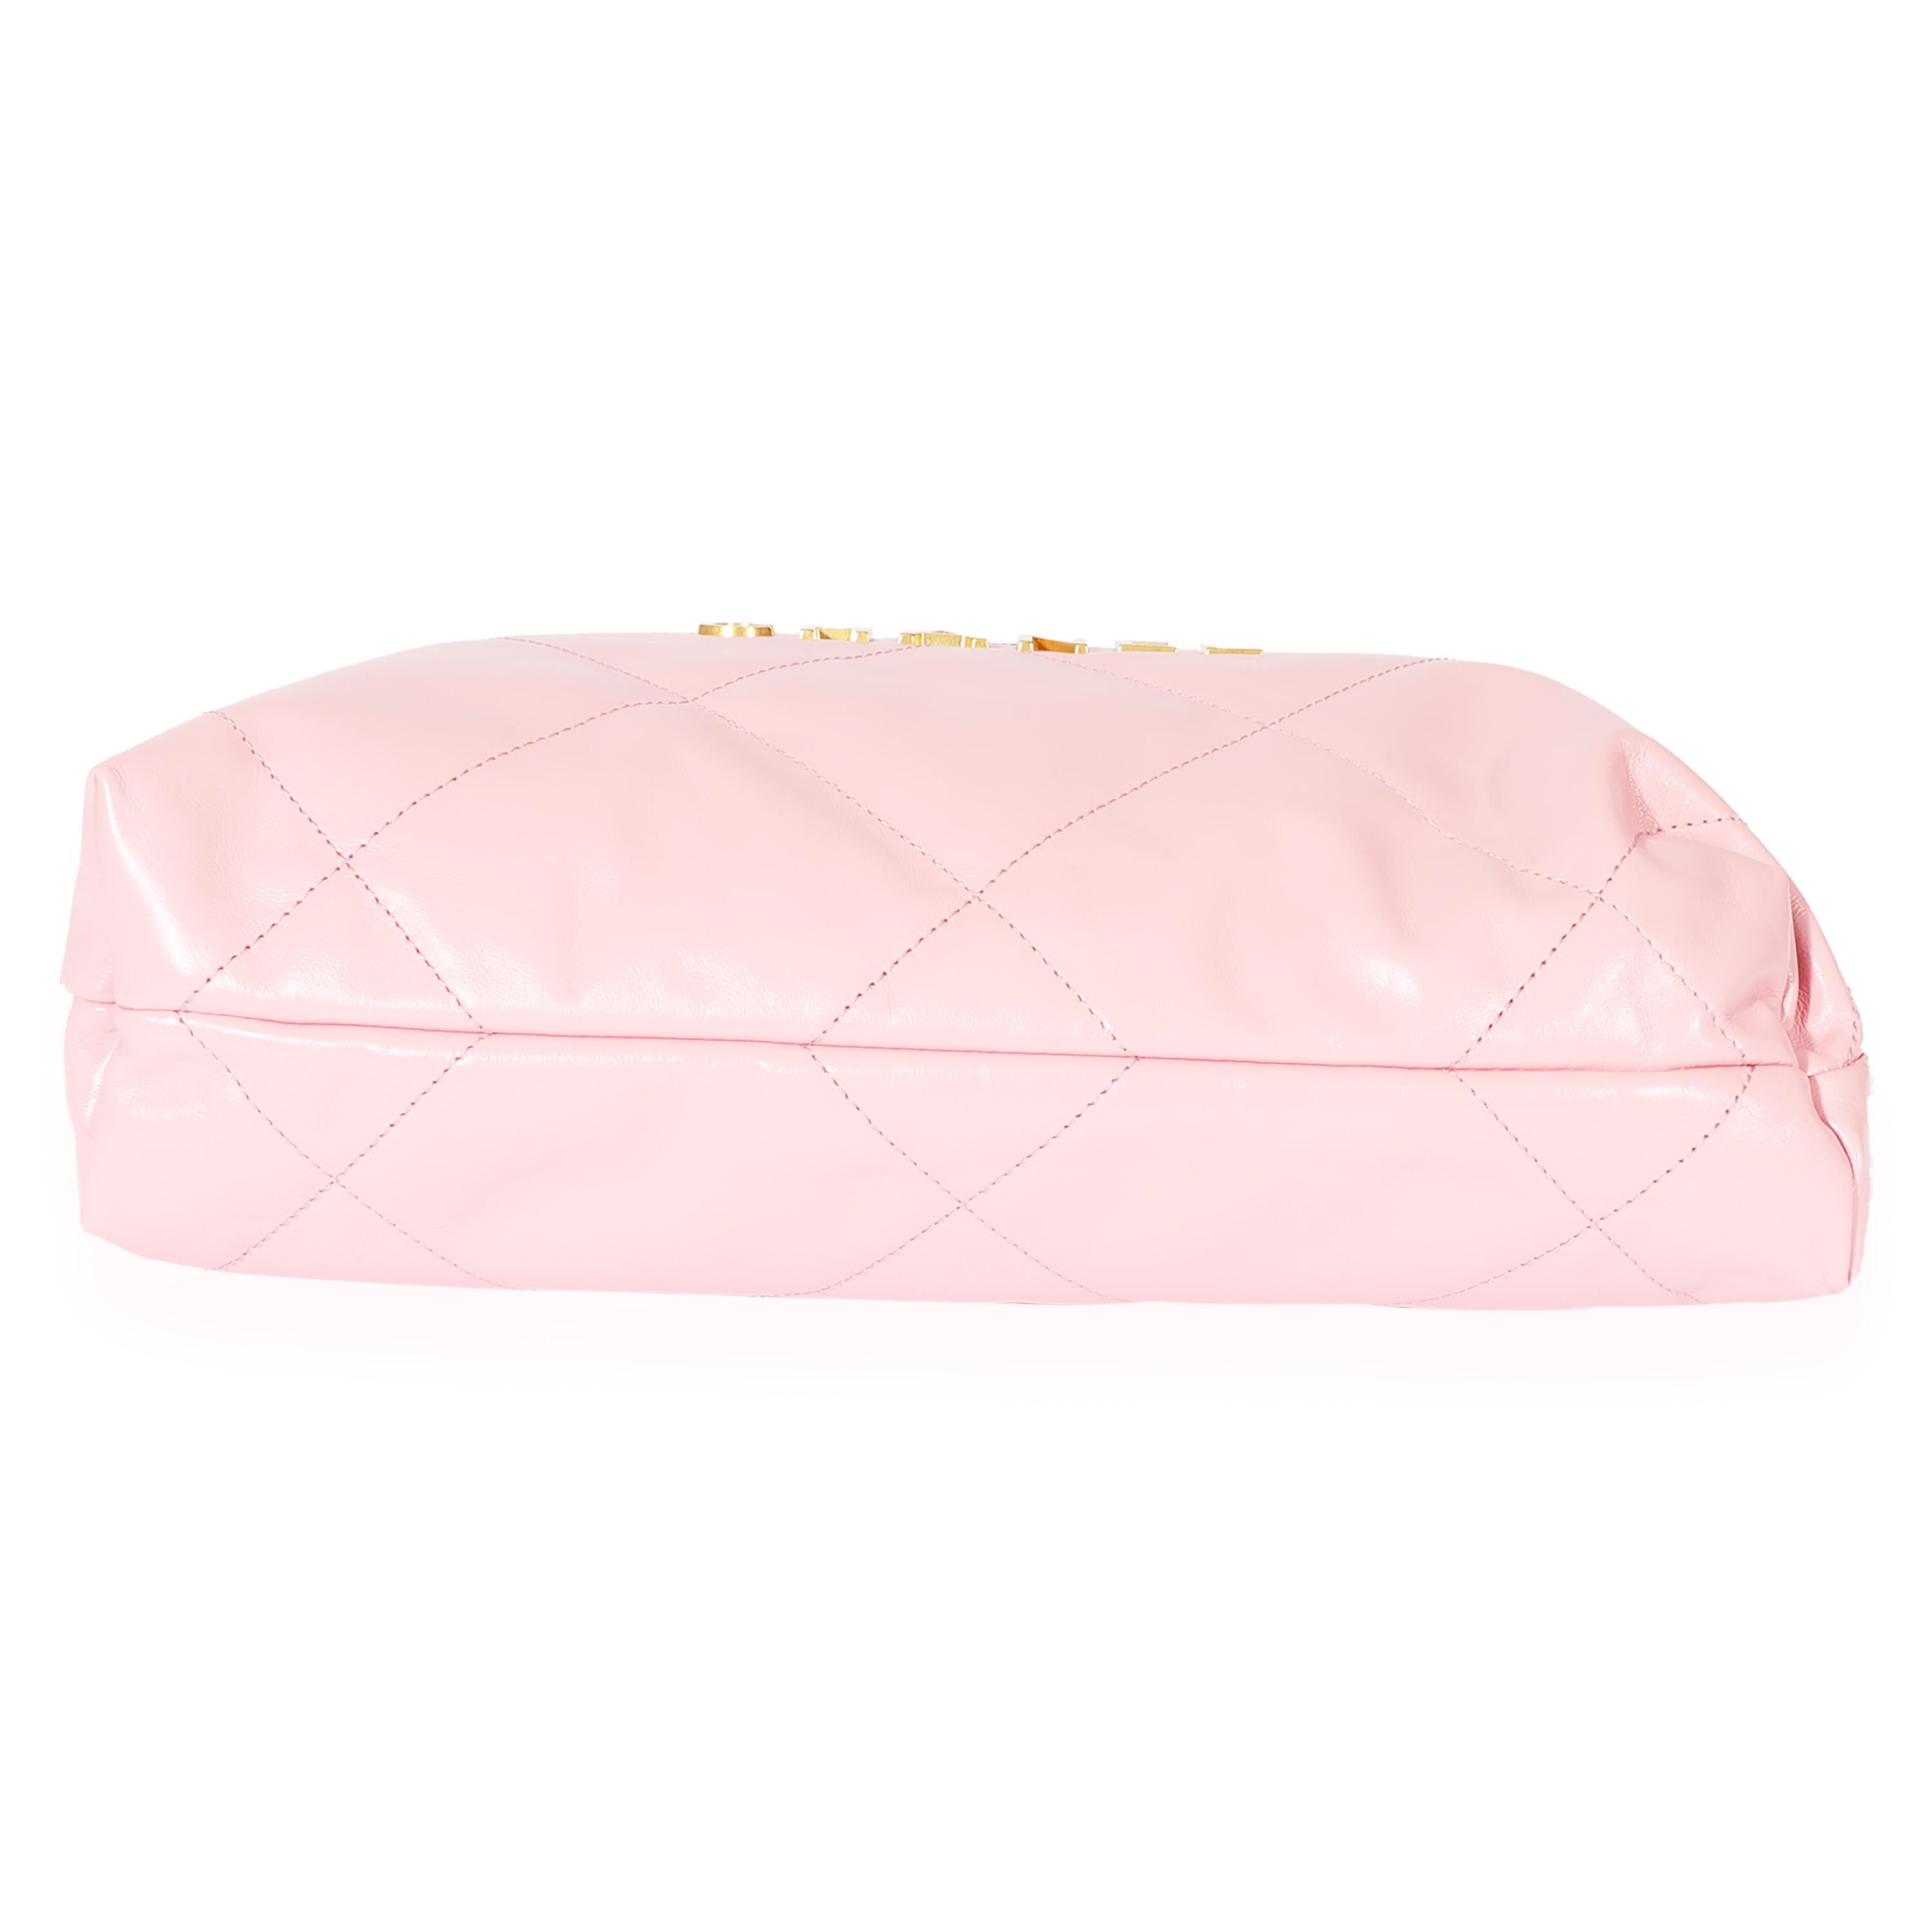 Women's Chanel Pink Calfskin Small 22 Bag